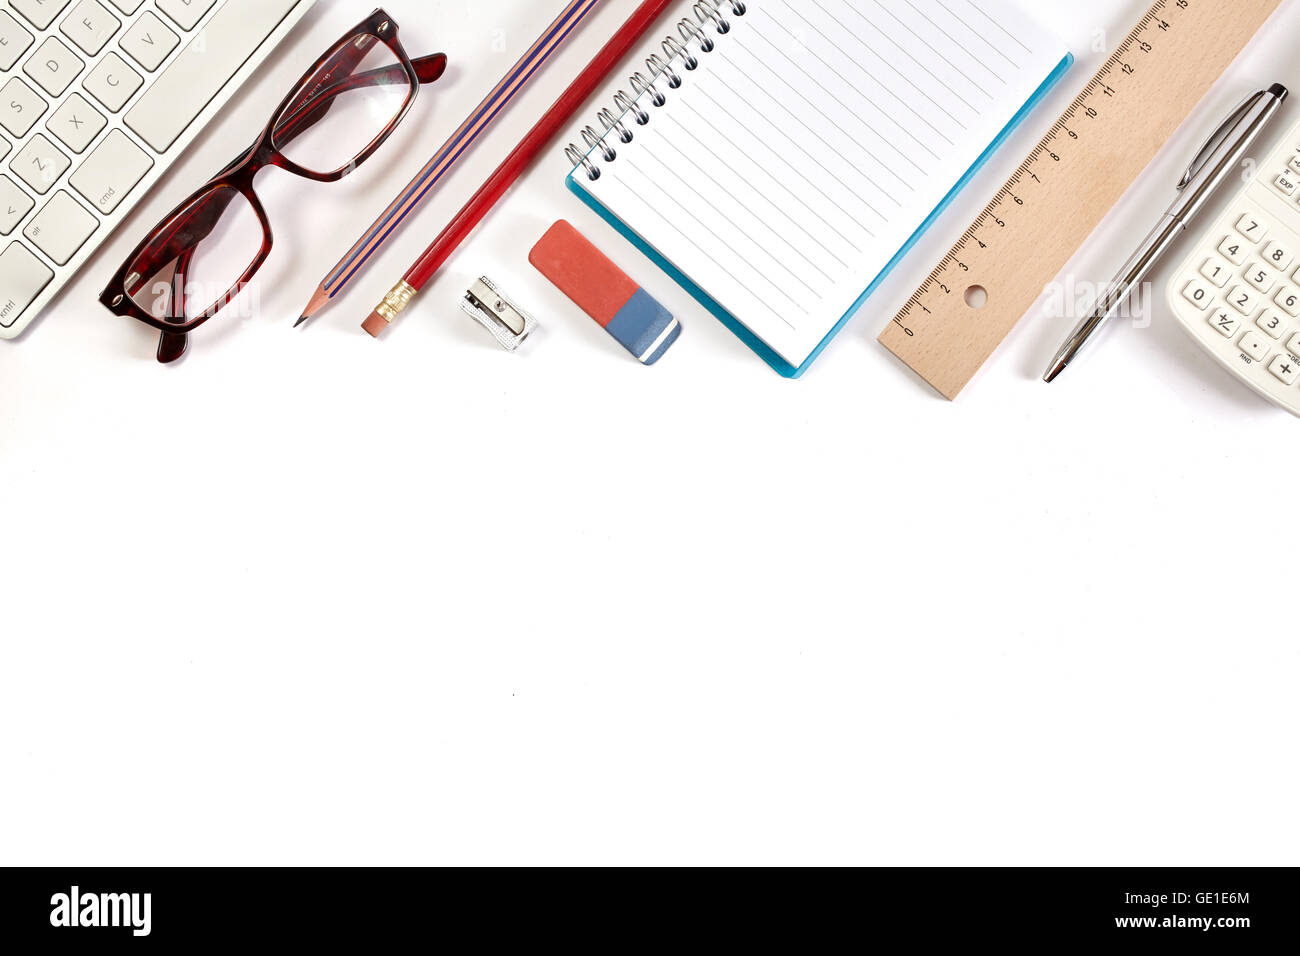 Vista superior de la oficina - Teclado, calculadora, lápiz, bolígrafo, gafas y bloc de notas en el cuadro blanco Foto de stock